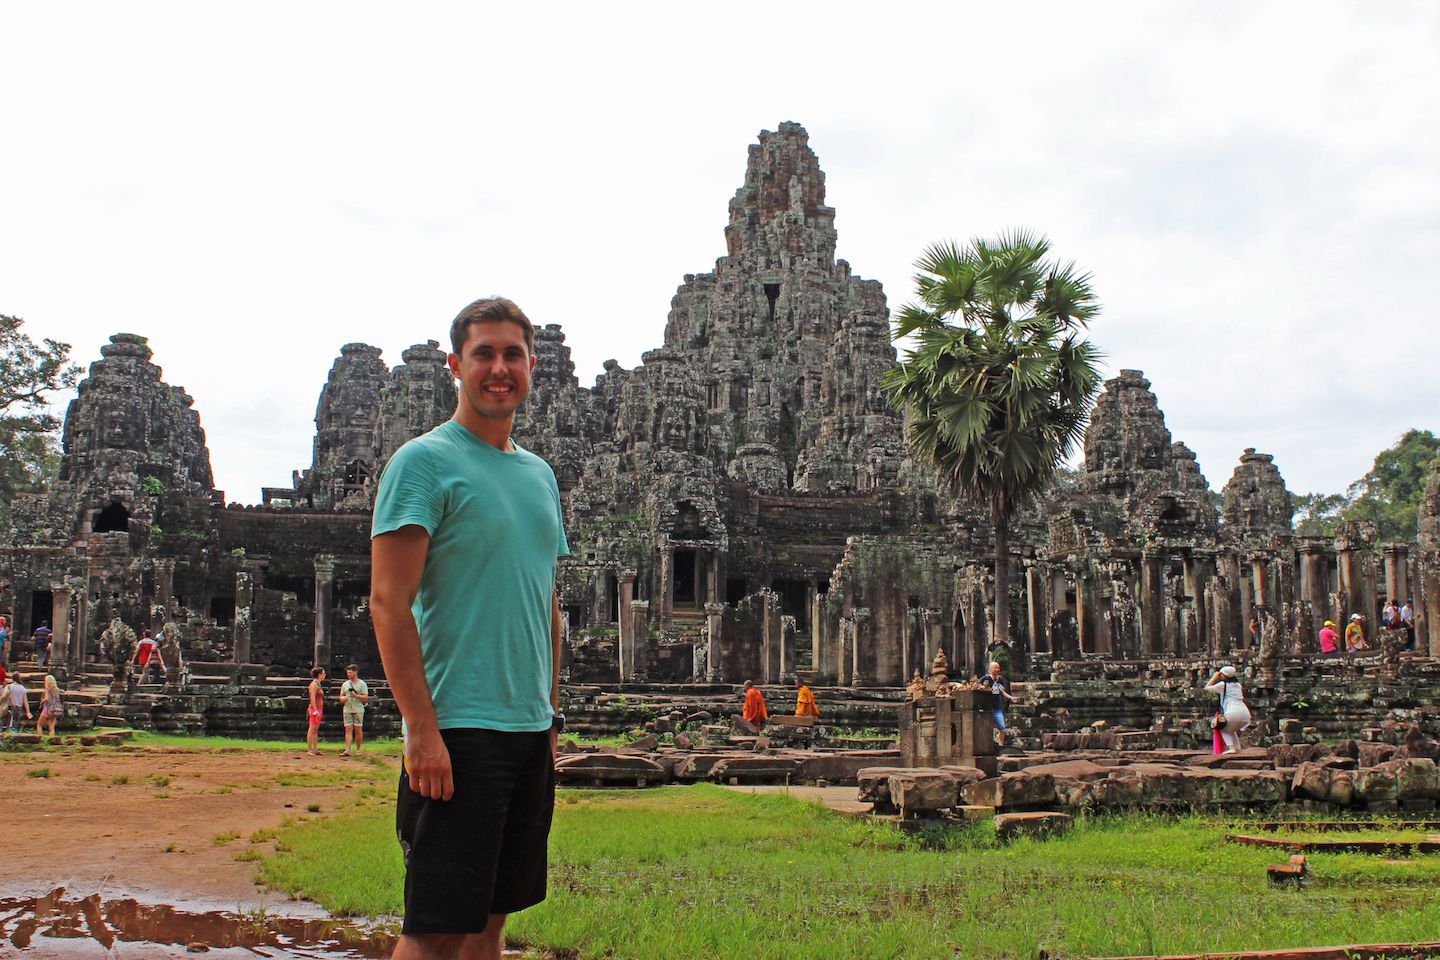 Carlos at the Bayon in Angkor Thom, Cambodia